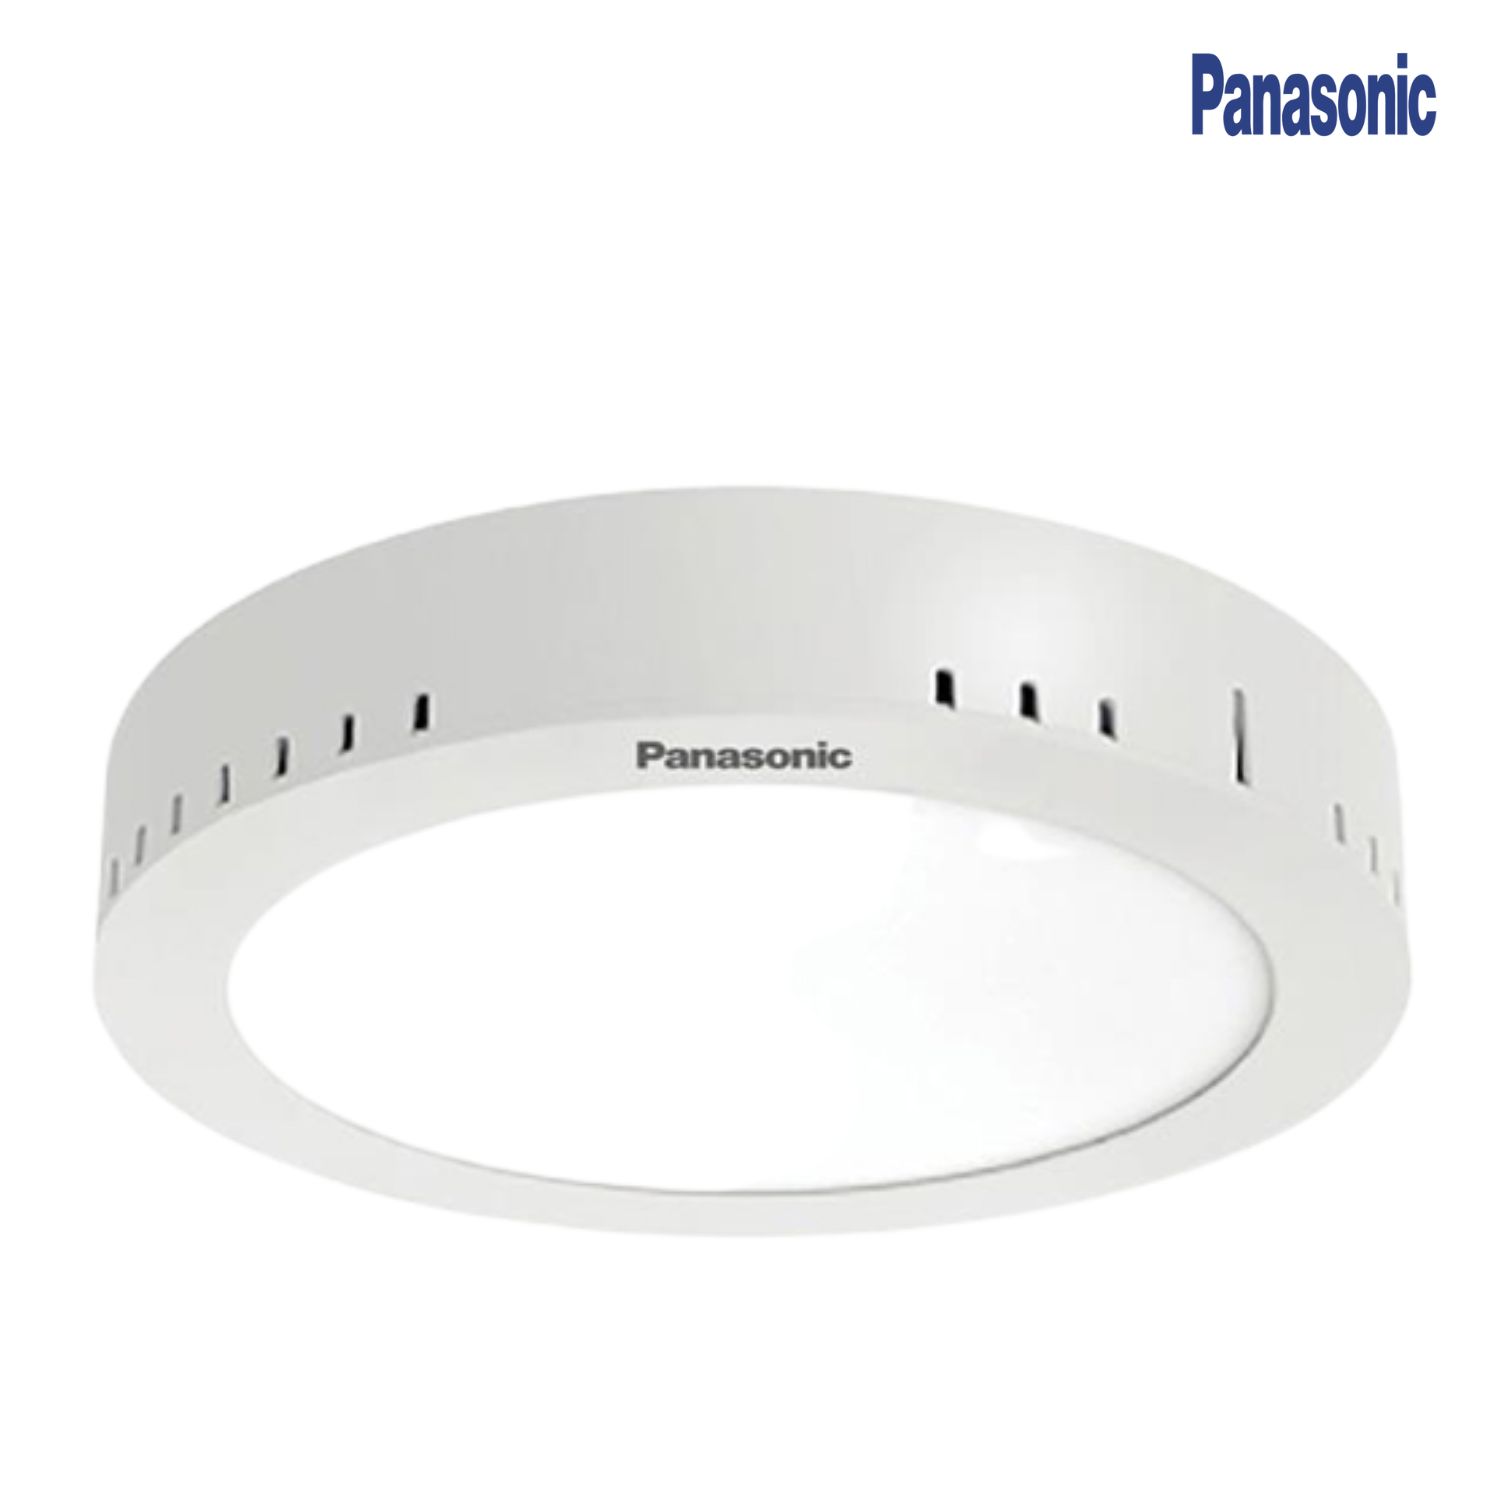 Panasonic - Đèn LED Ốp Trần Nổi Tròn 24W | NNNC7622188 / NNNC7623188 / NNNC7627188